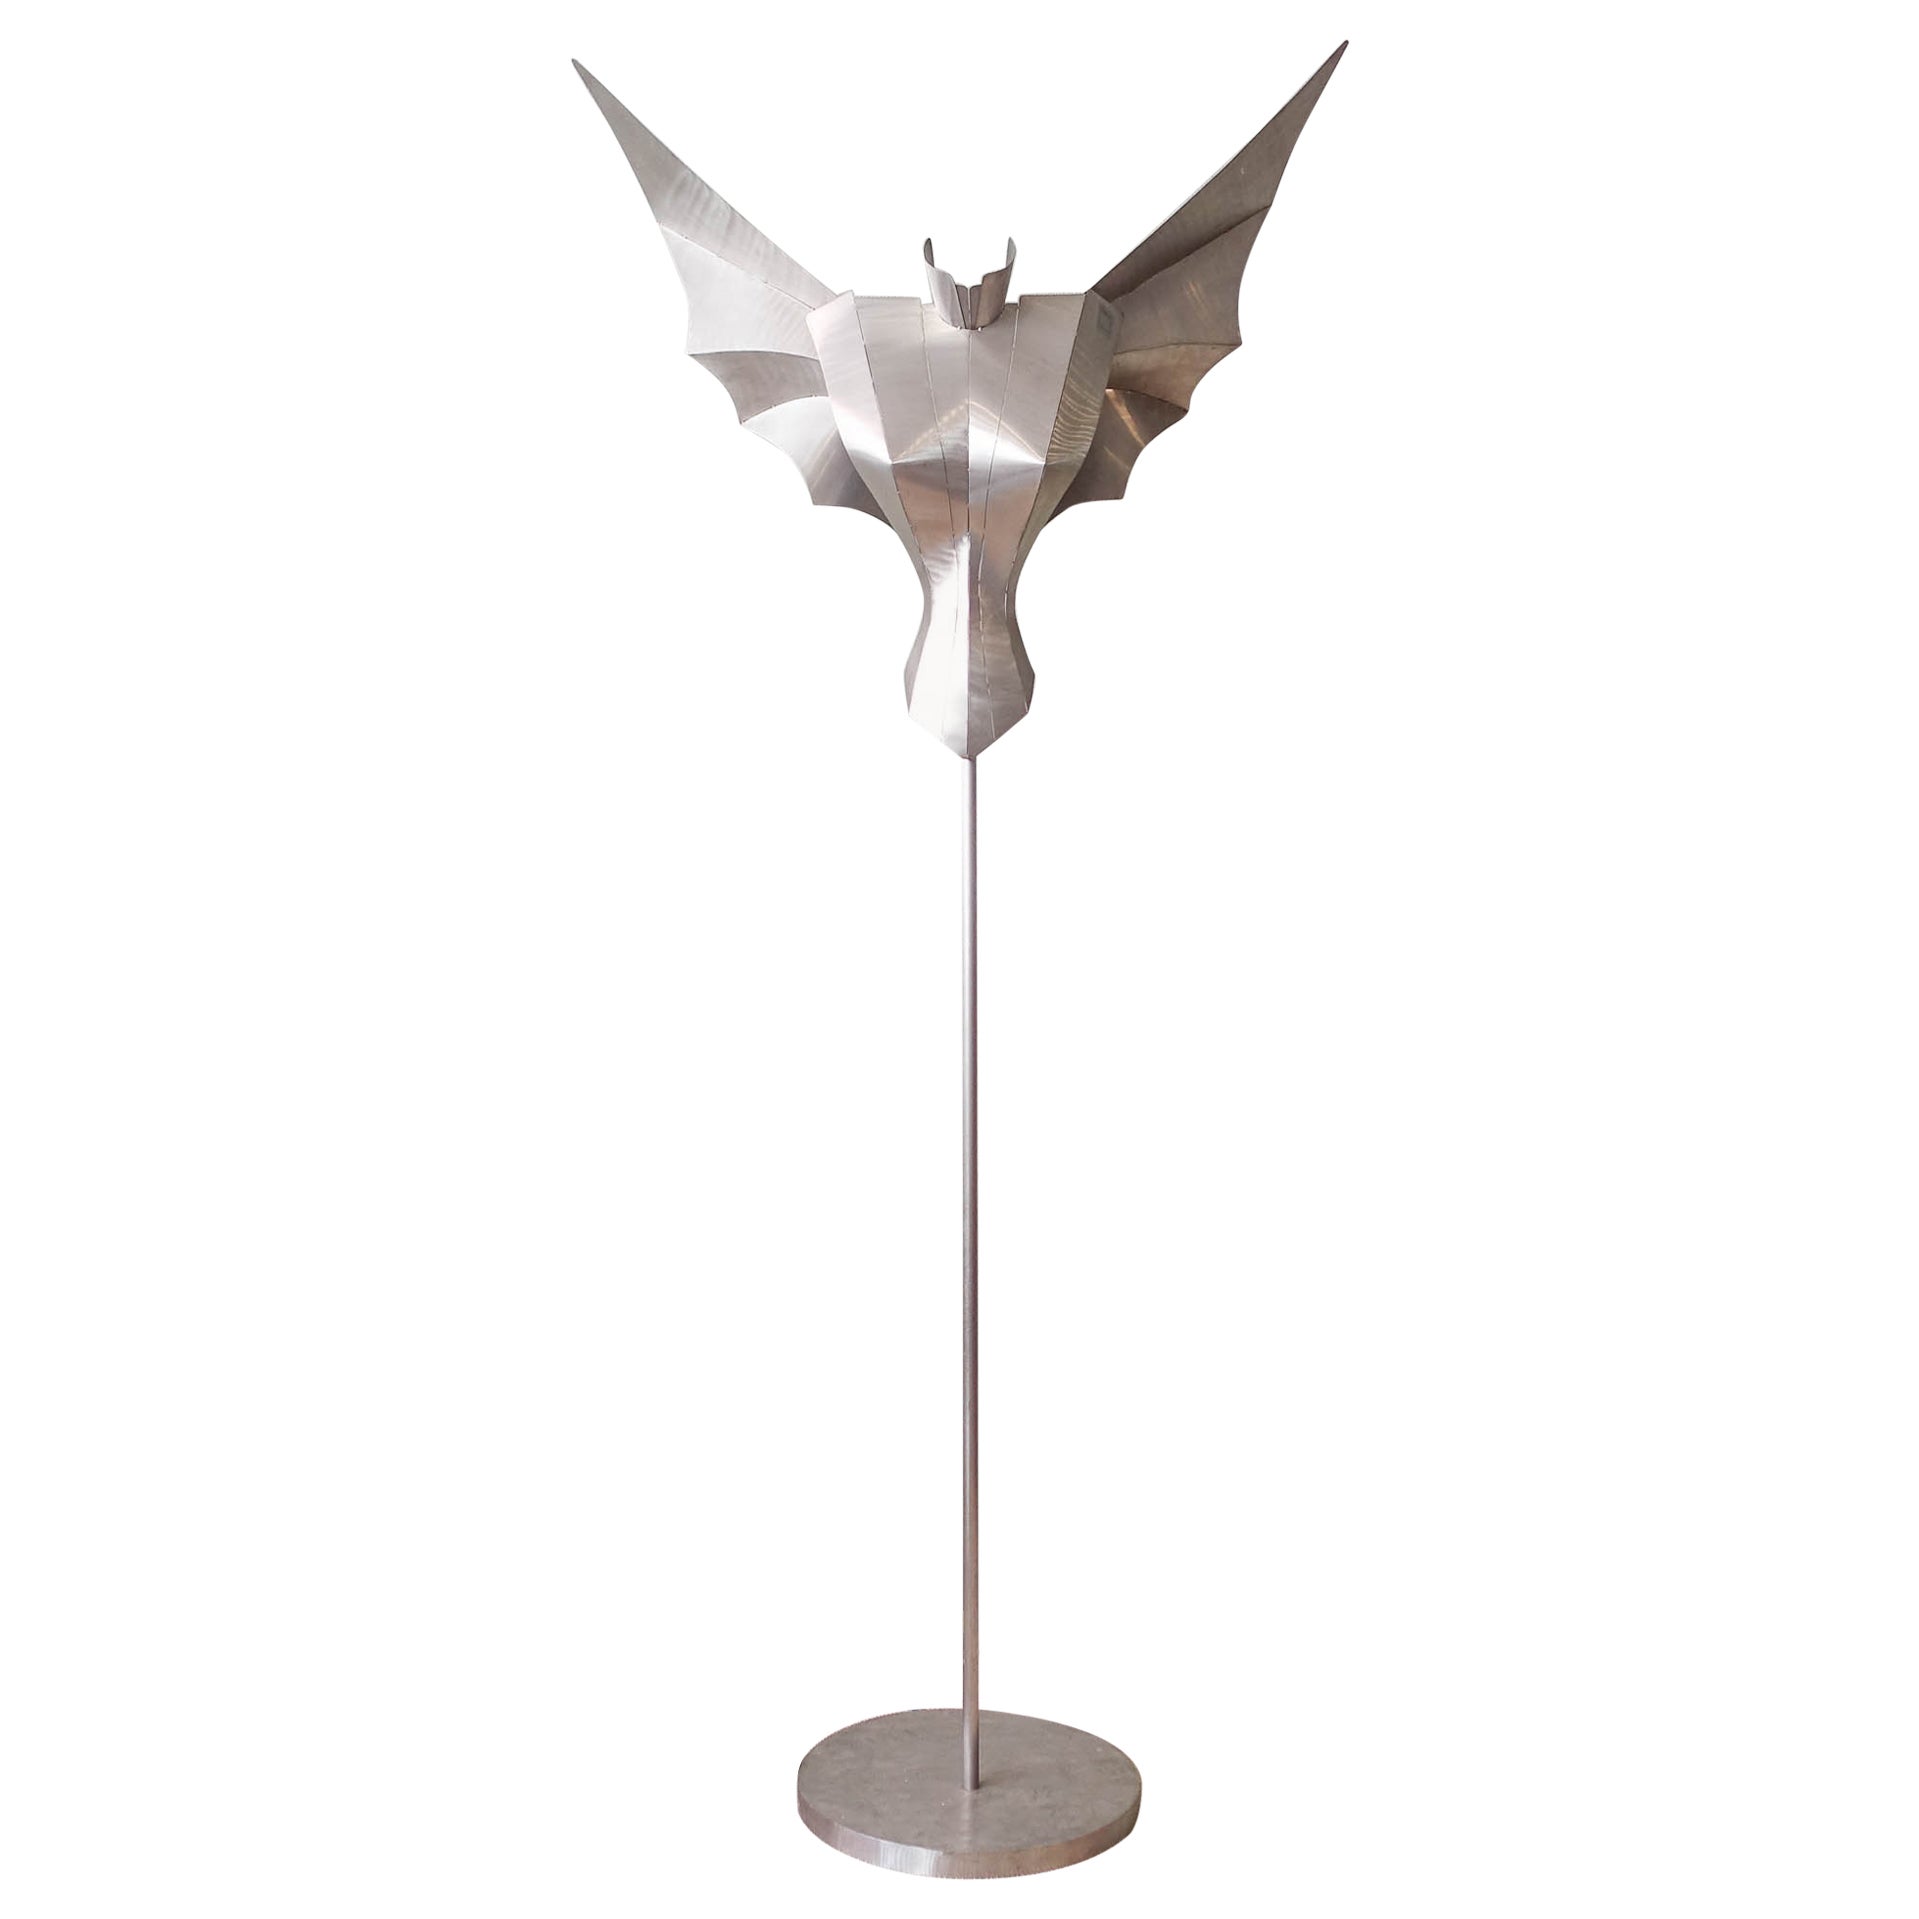 Sculptural Angel Floor Lamp by Reinhard Stubenrauch, 1990's